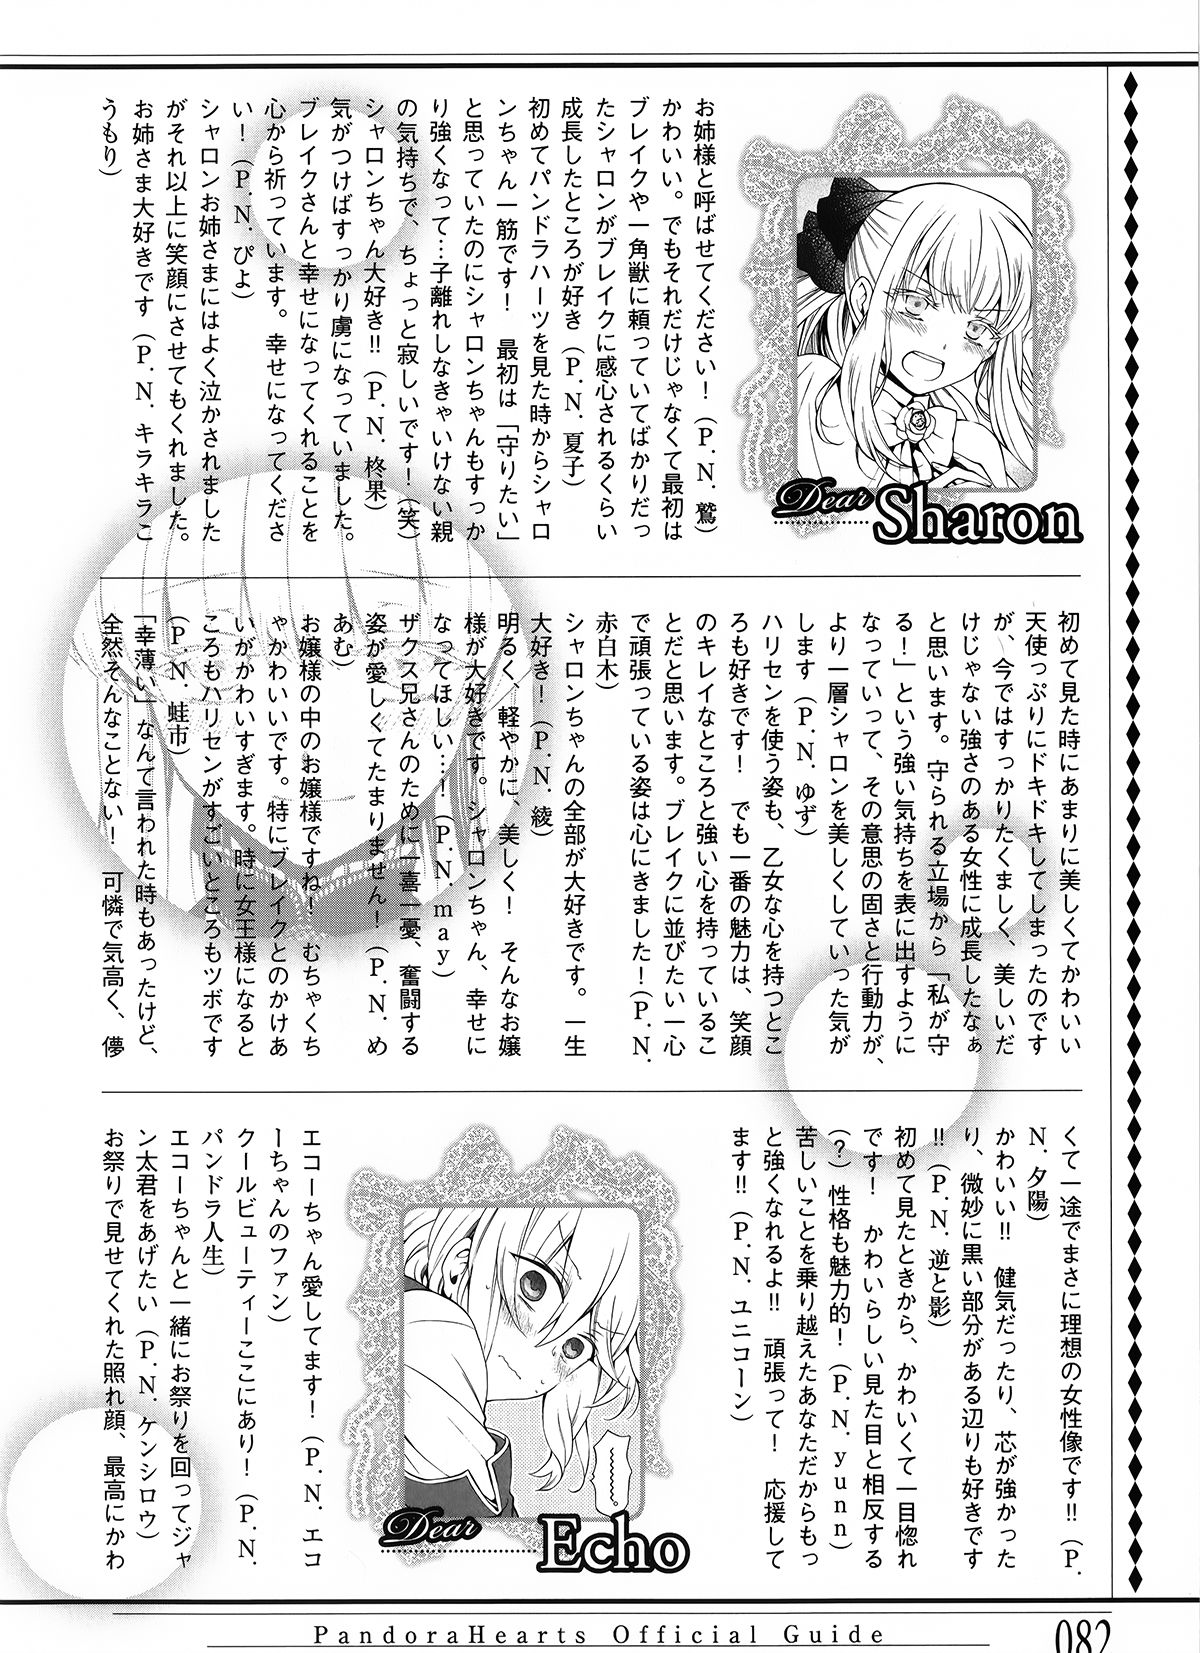 Pandora Hearts Guidebook 24+1: Last Dance パンドラハーツ オフィシャルガイド 24 + 1 ~Last Dance! 85